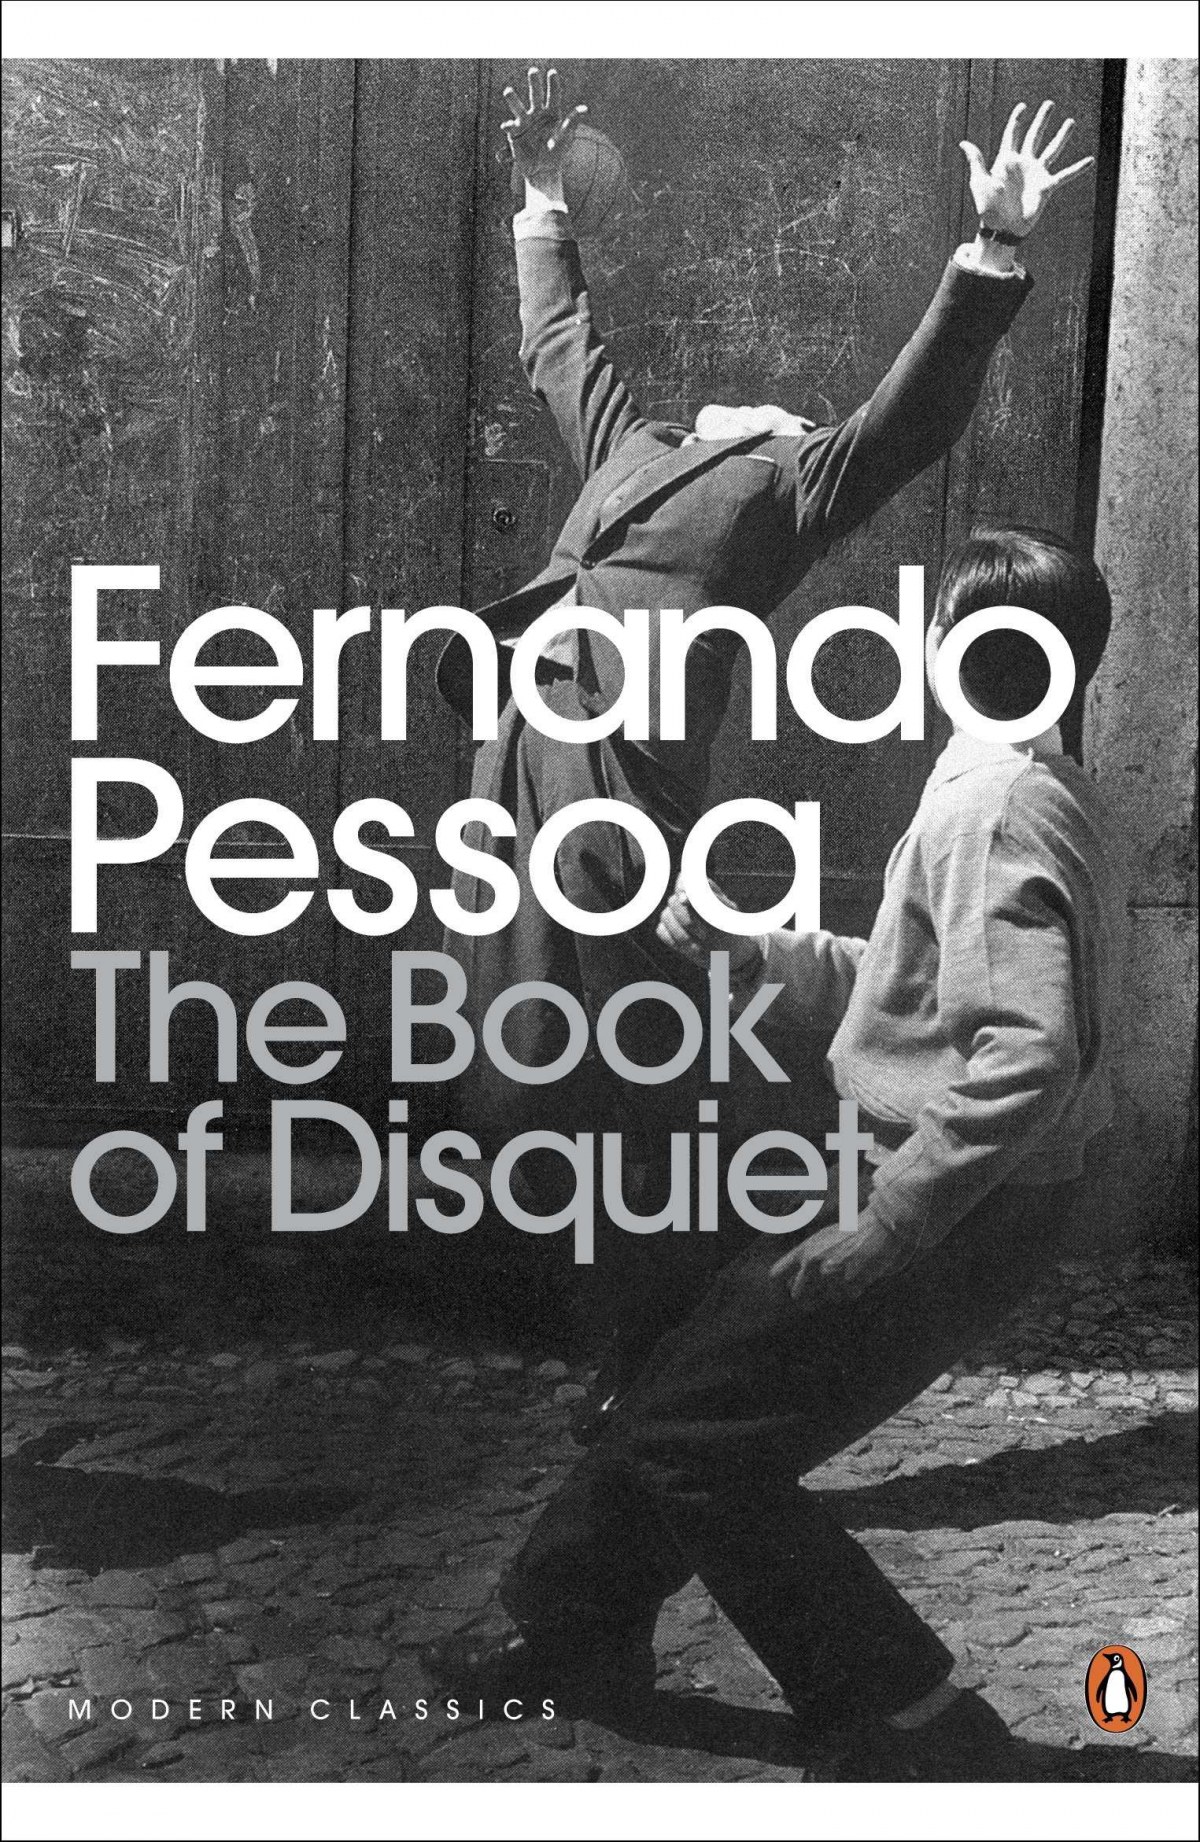 The book of disquiet - Pessoa, Fernando